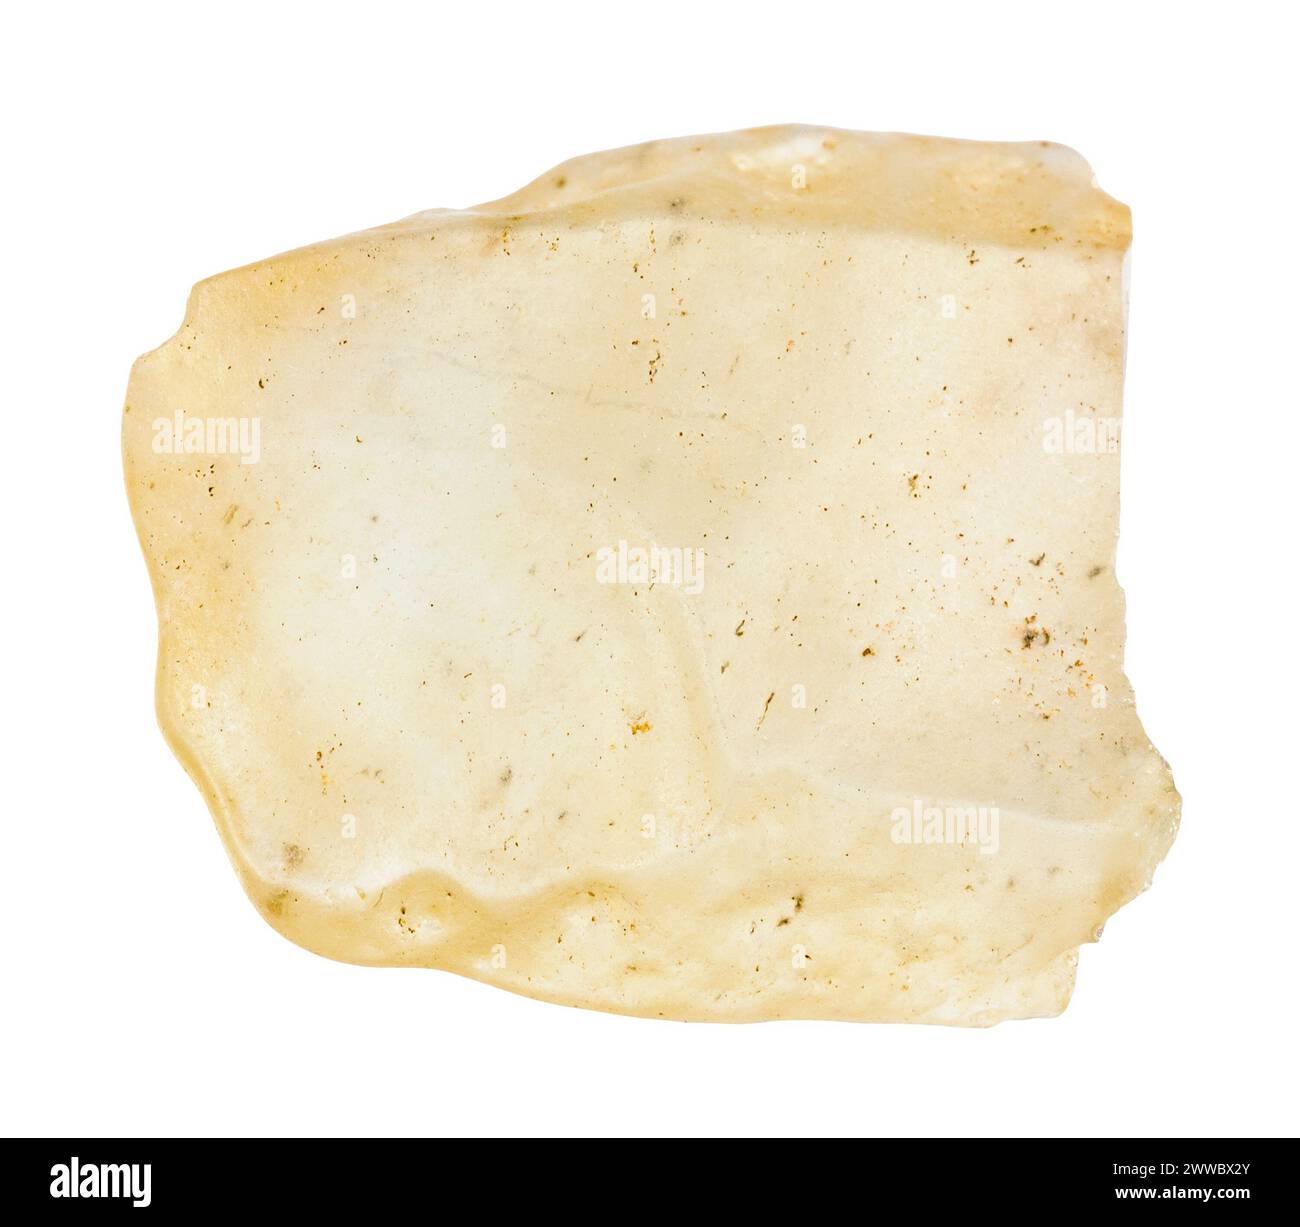 Gros plan de l'échantillon de pierre naturelle de la collection géologique - verre brut du désert libyen isolé sur fond blanc du Sahara oriental, Egypte Banque D'Images